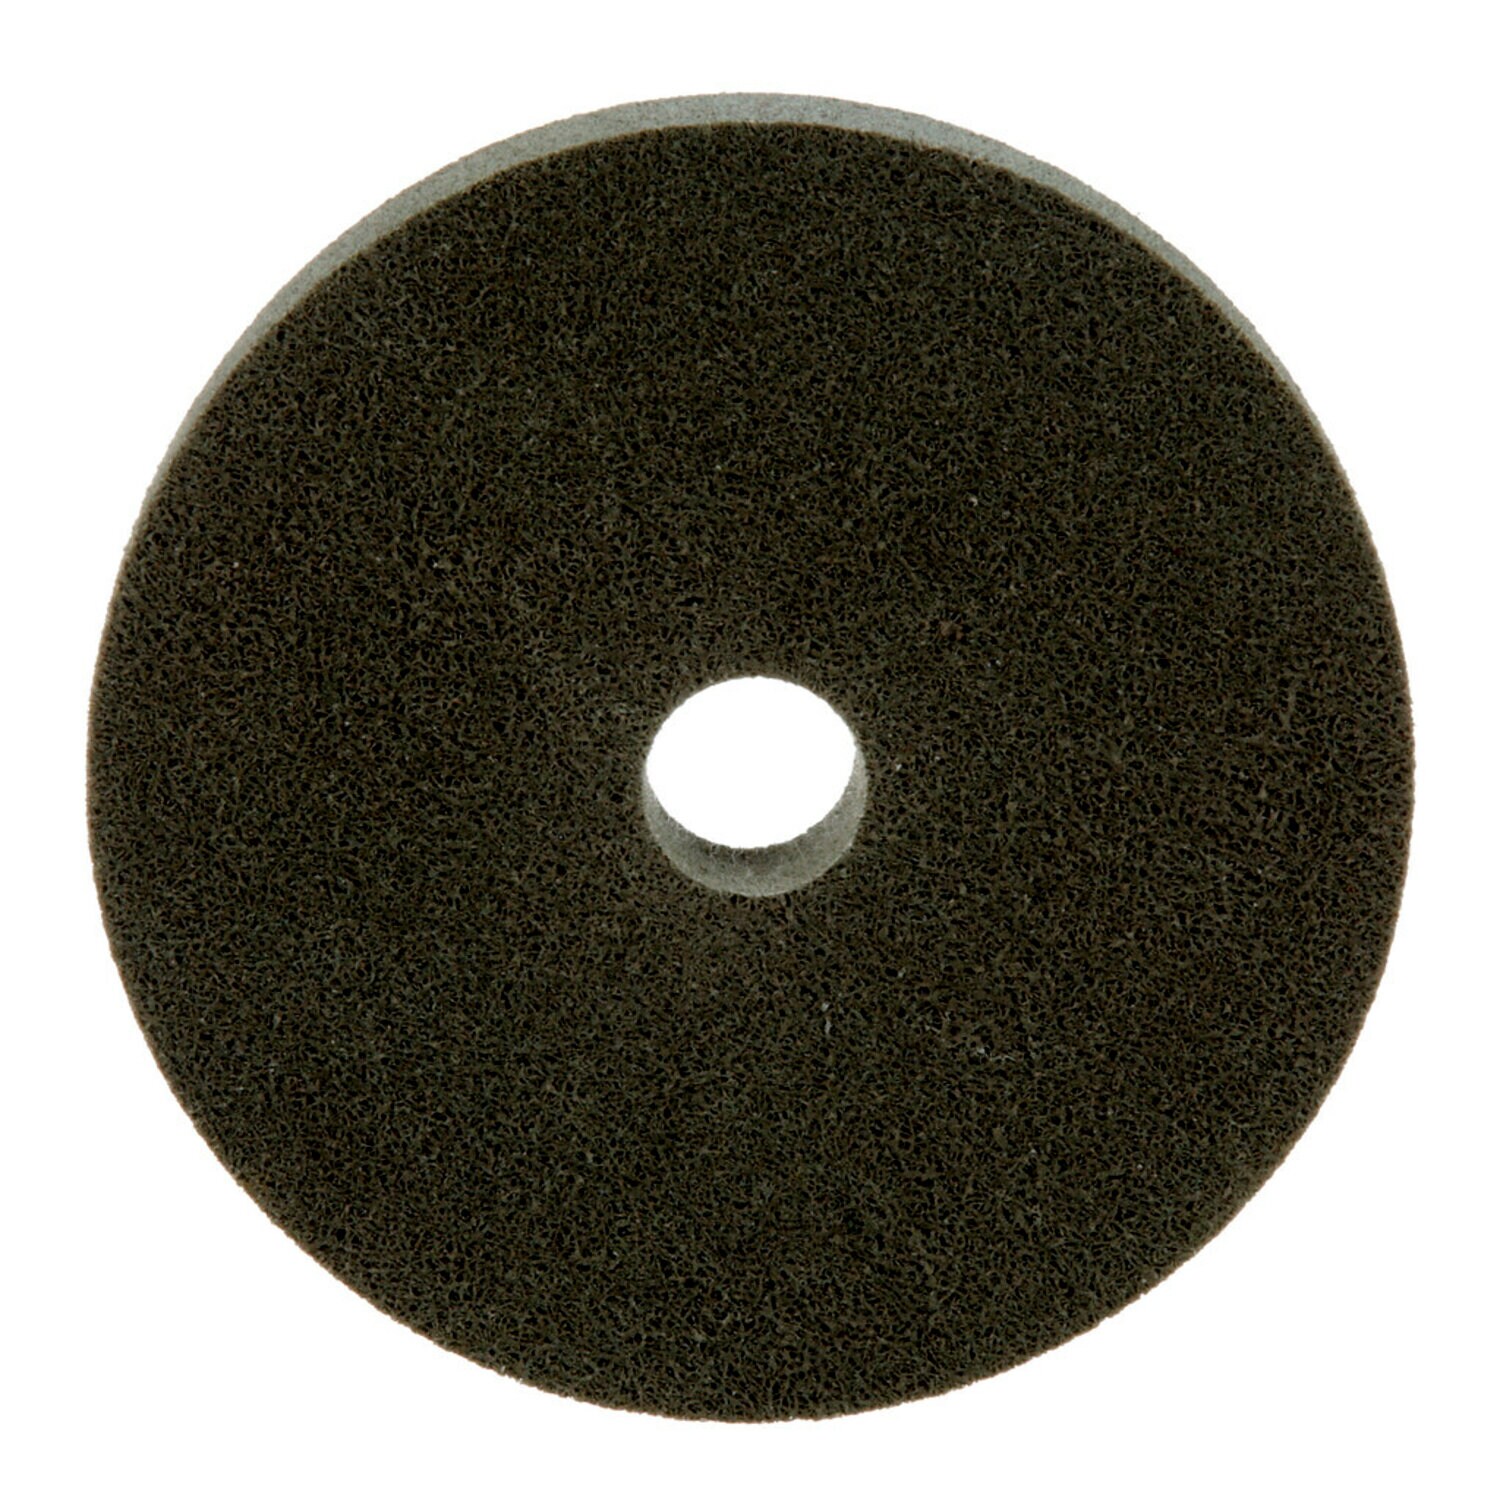 7000046923 - Standard Abrasives A/O Unitized Wheel 882178, 821 6 in x 1 in x 1 in, 3
ea/Case